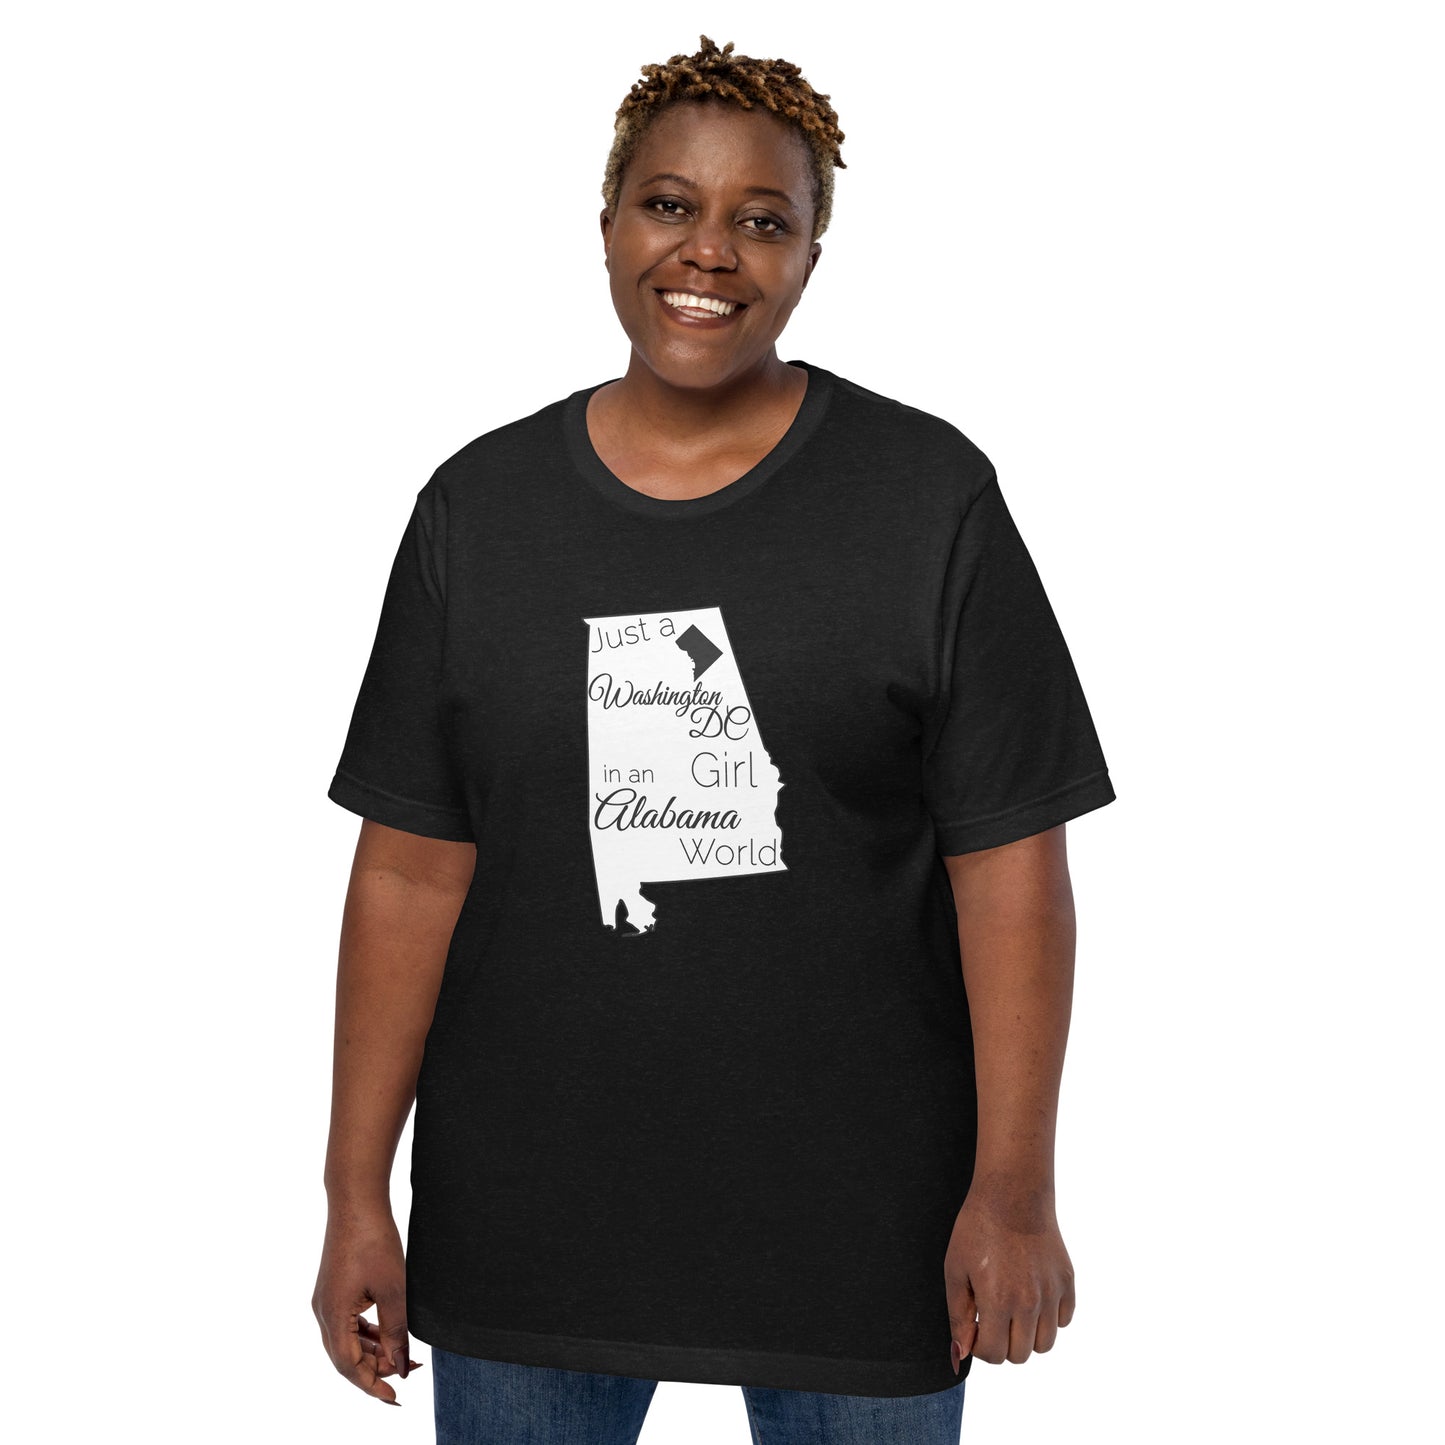 Just a Washington DC Girl in an Alabama World Unisex t-shirt